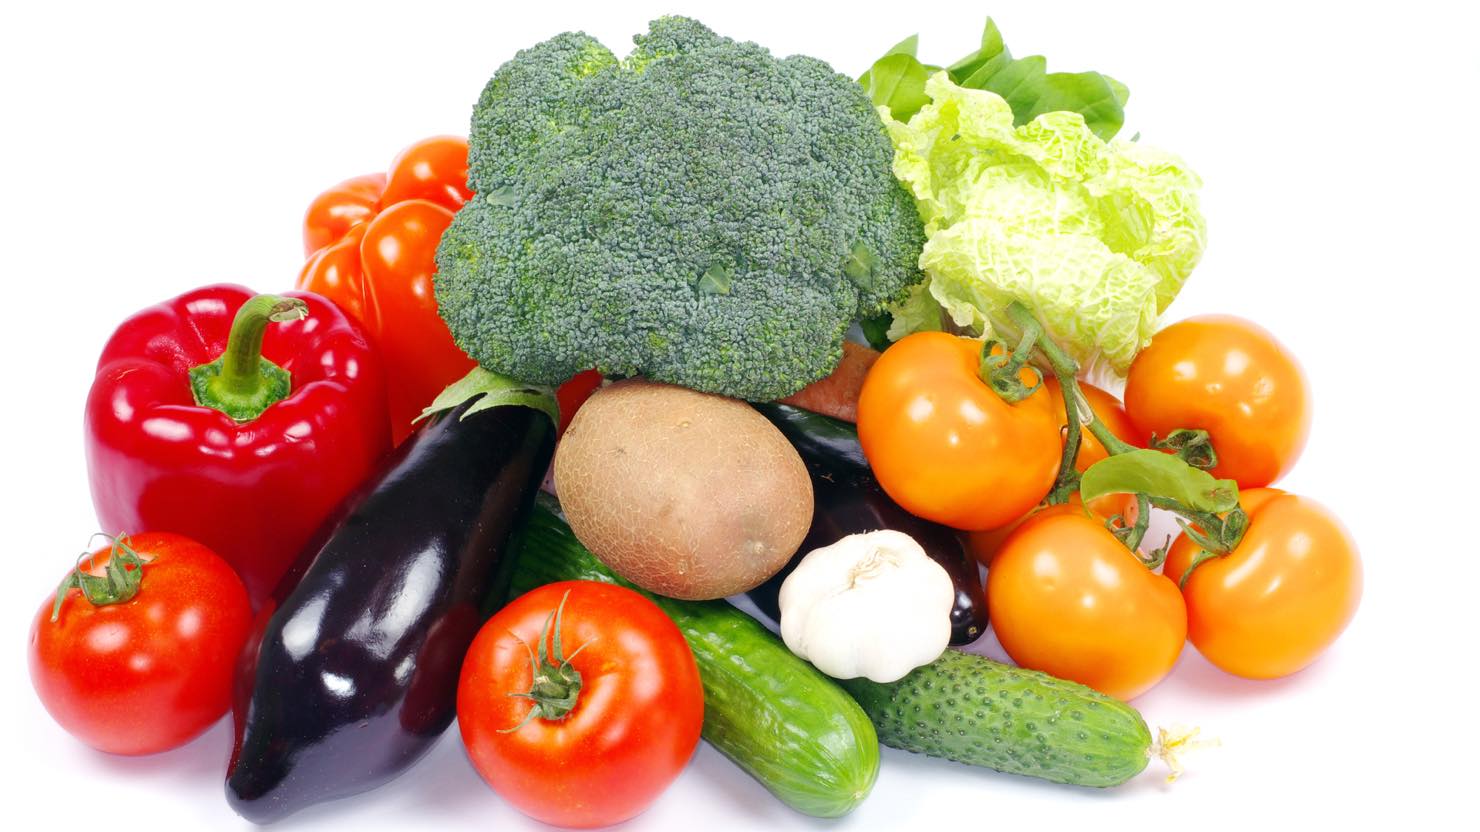 低カロリーで 満腹感 が得られる 17種類の食べ物 と賢いダイエット方法 暮らし方から物件探し